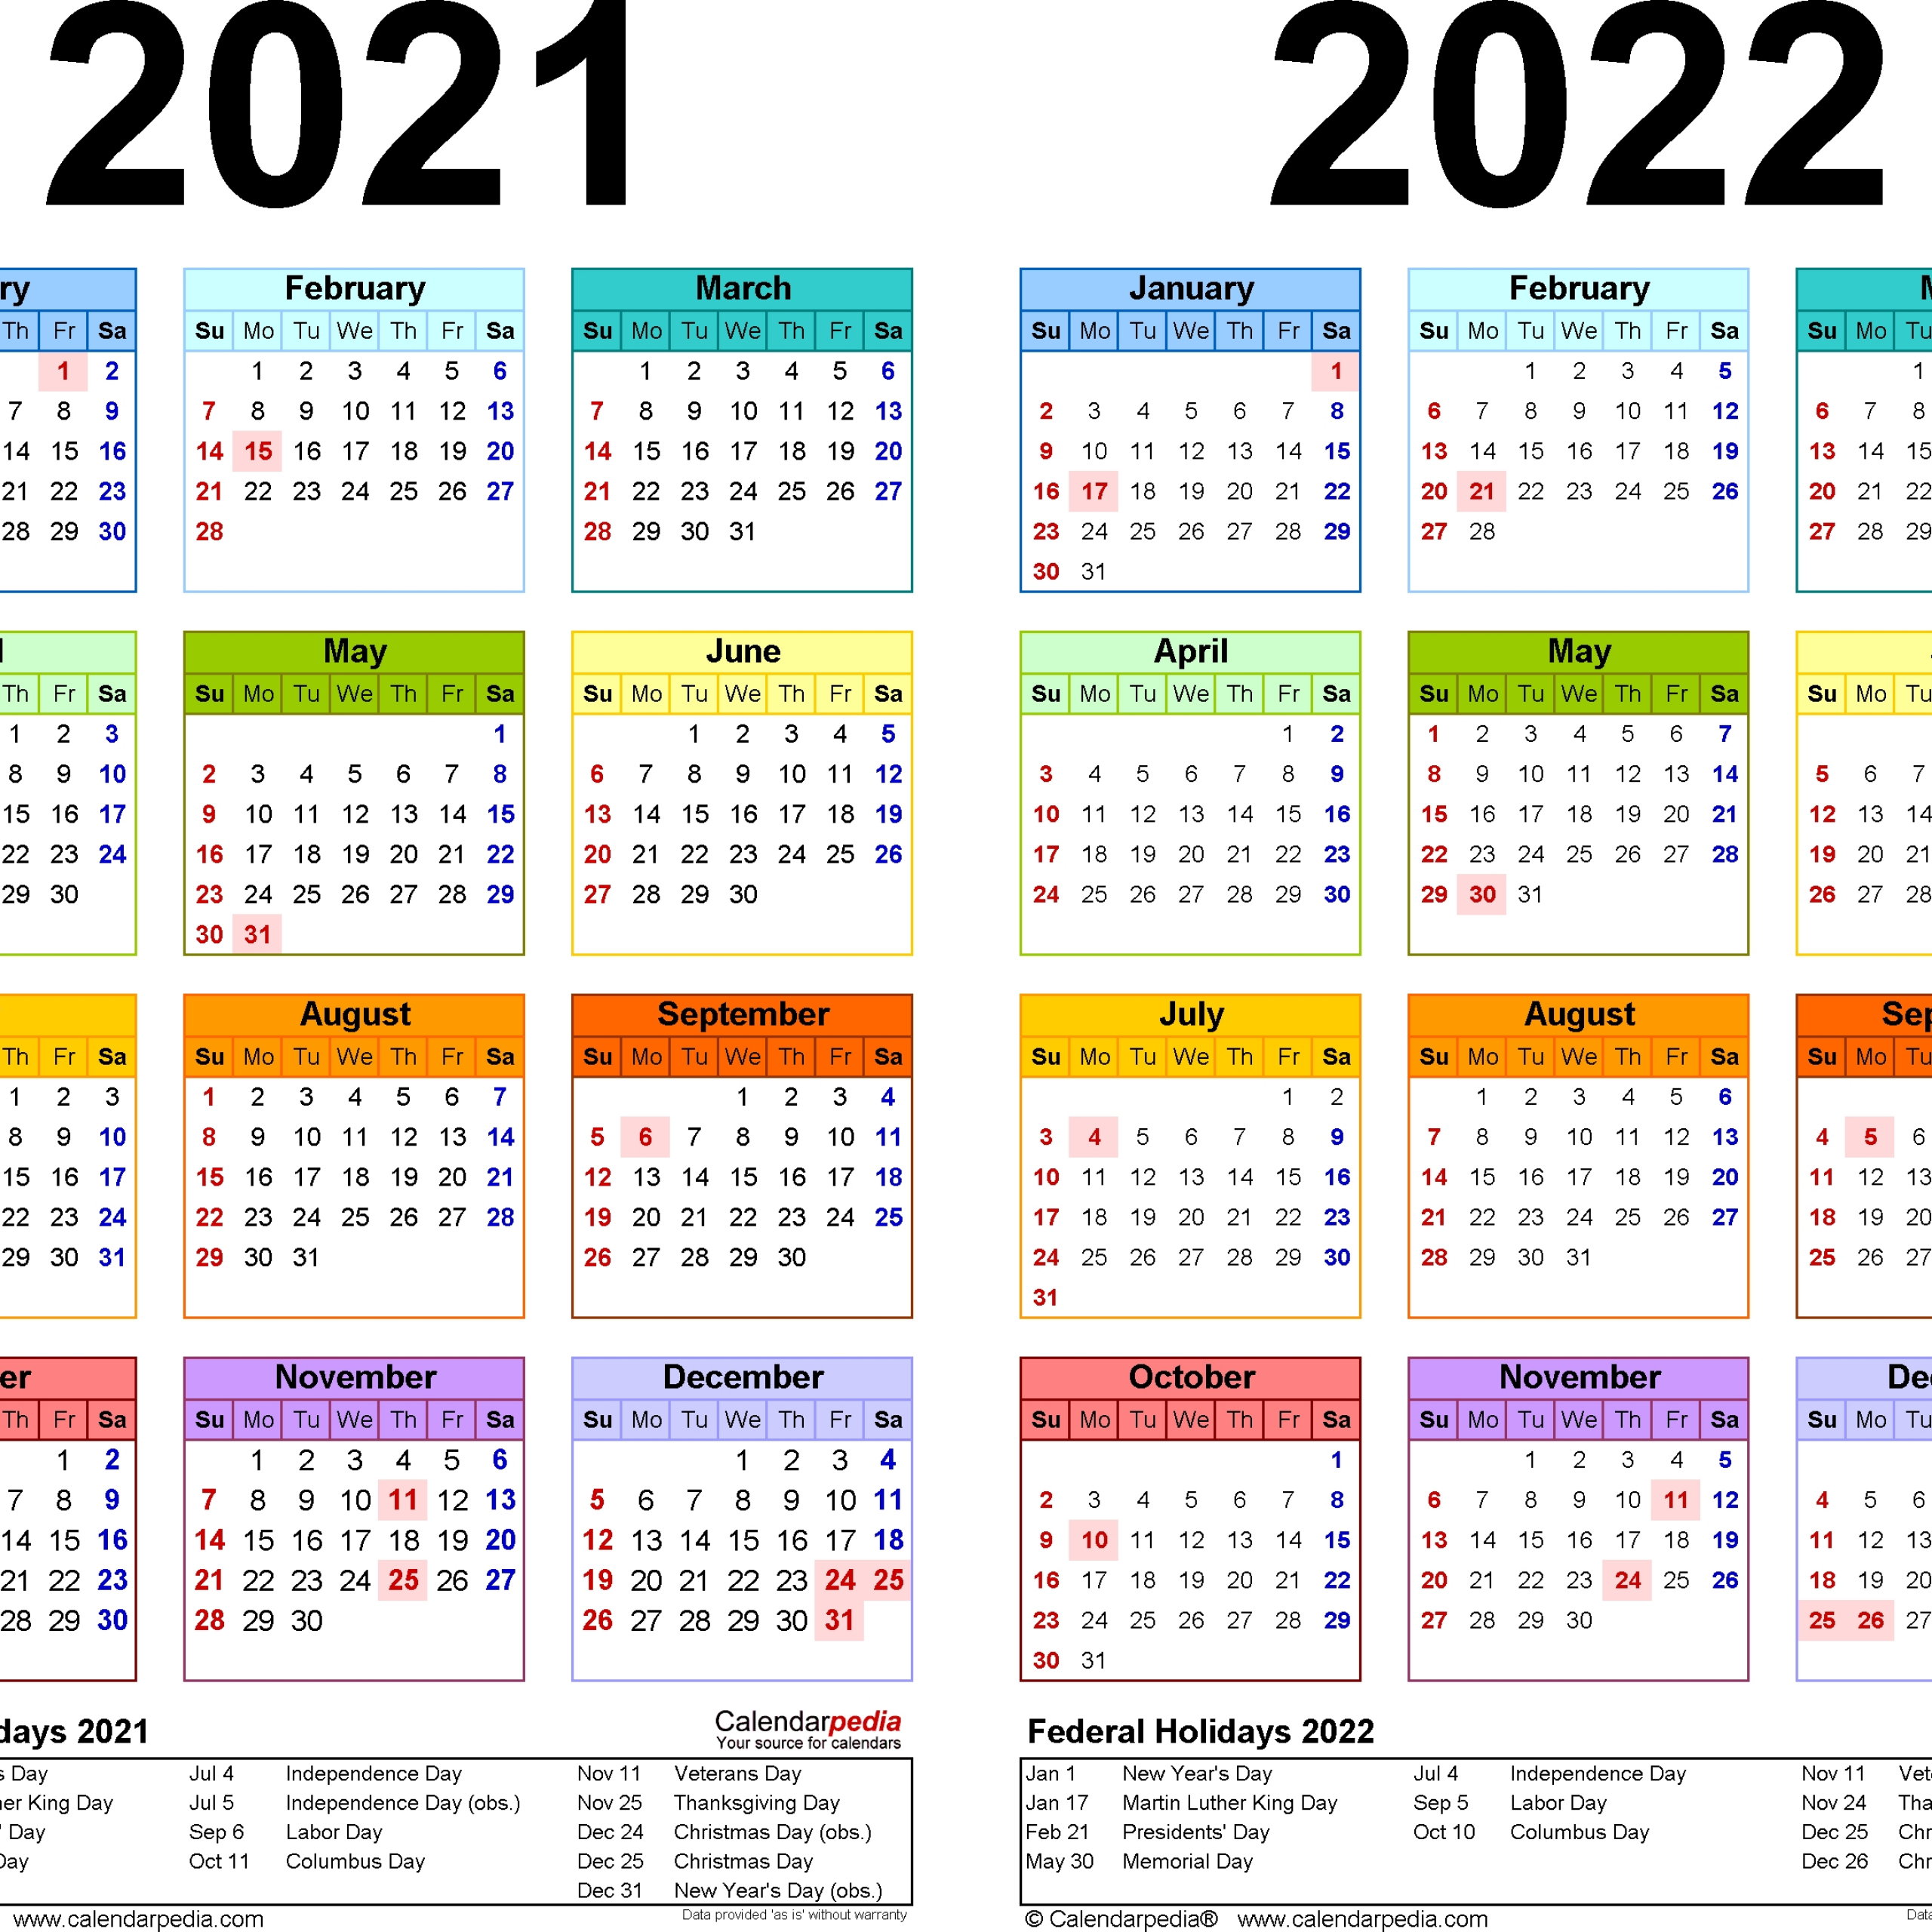 2021 Calendar South Africa | Get Free Calendar-Everyday Holiday Calendar 2021